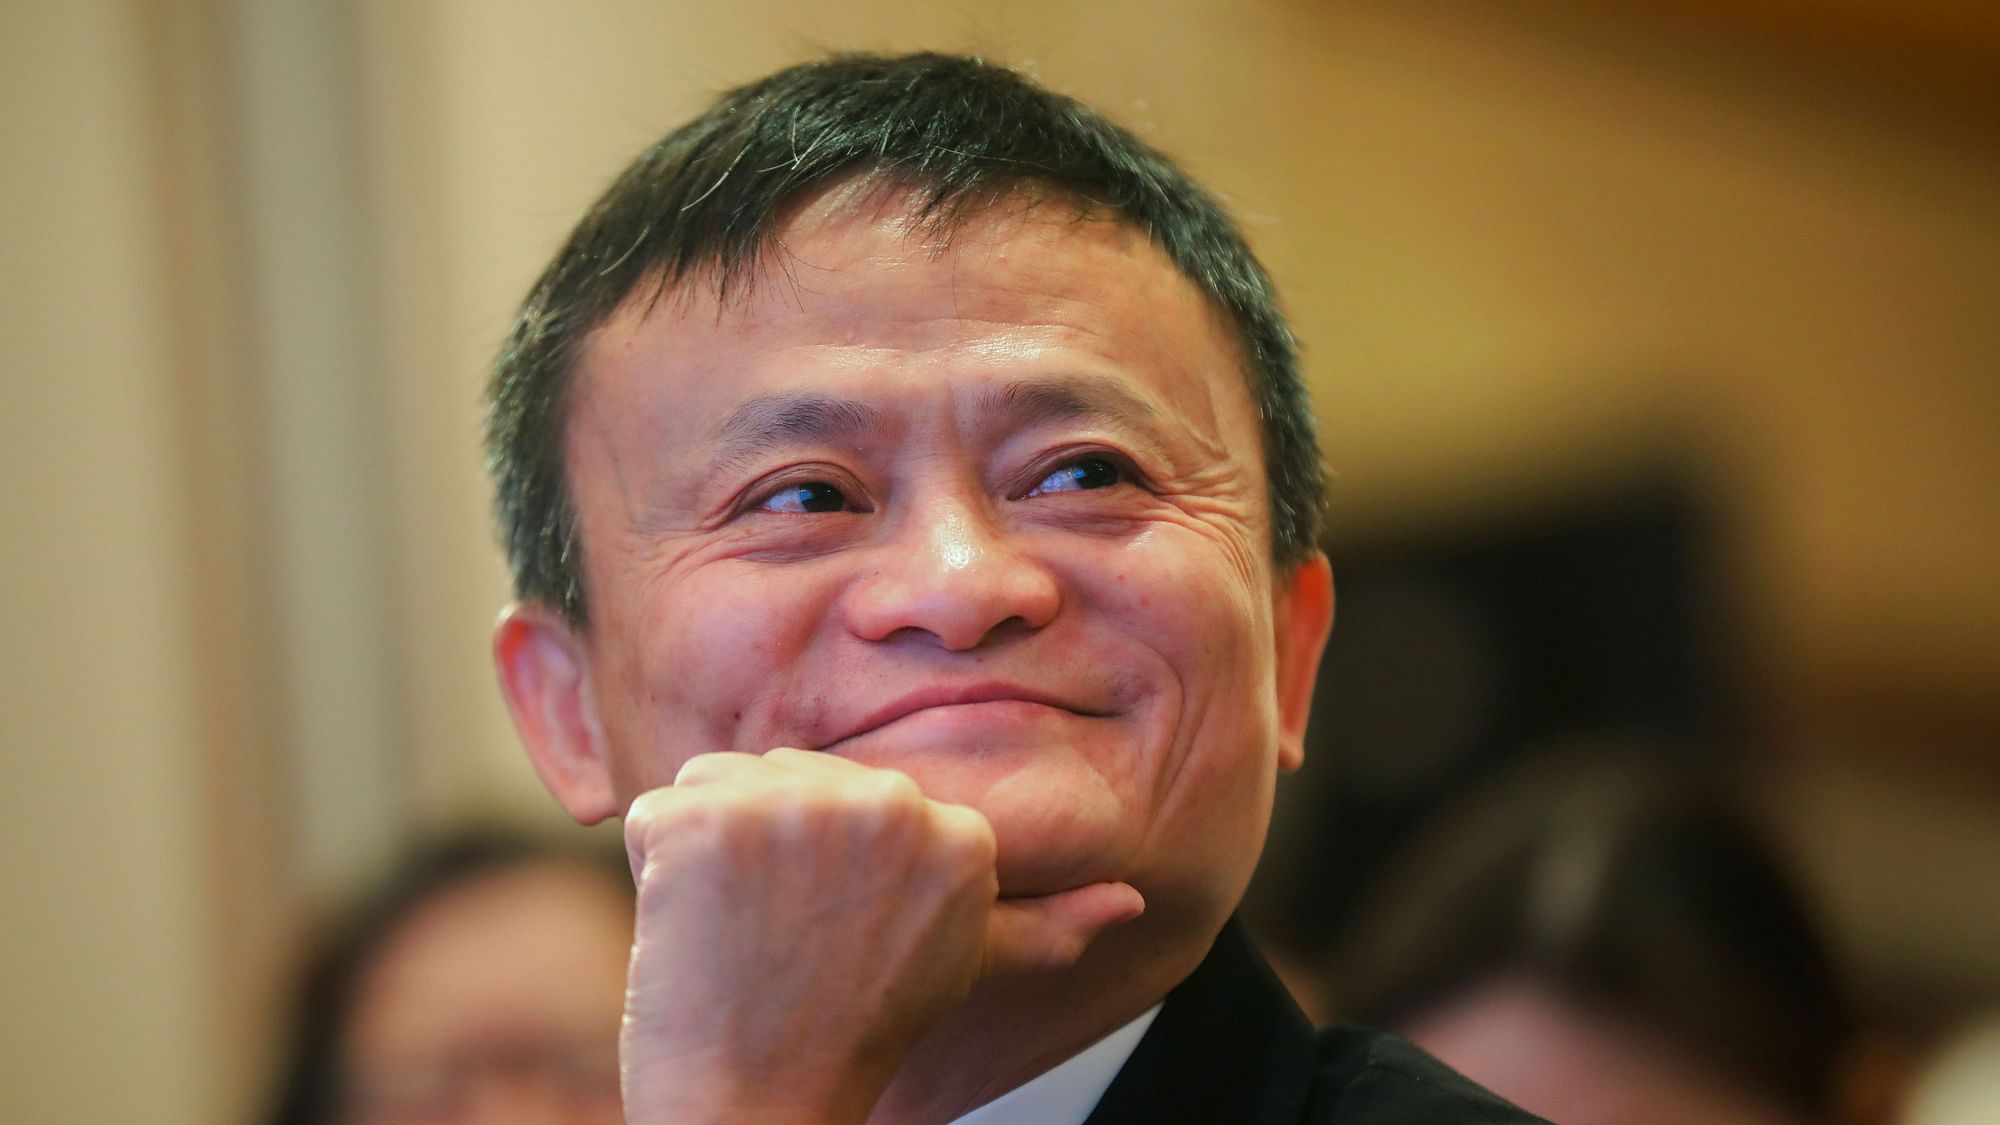 File image of Jack Ma, founder, Alibaba.